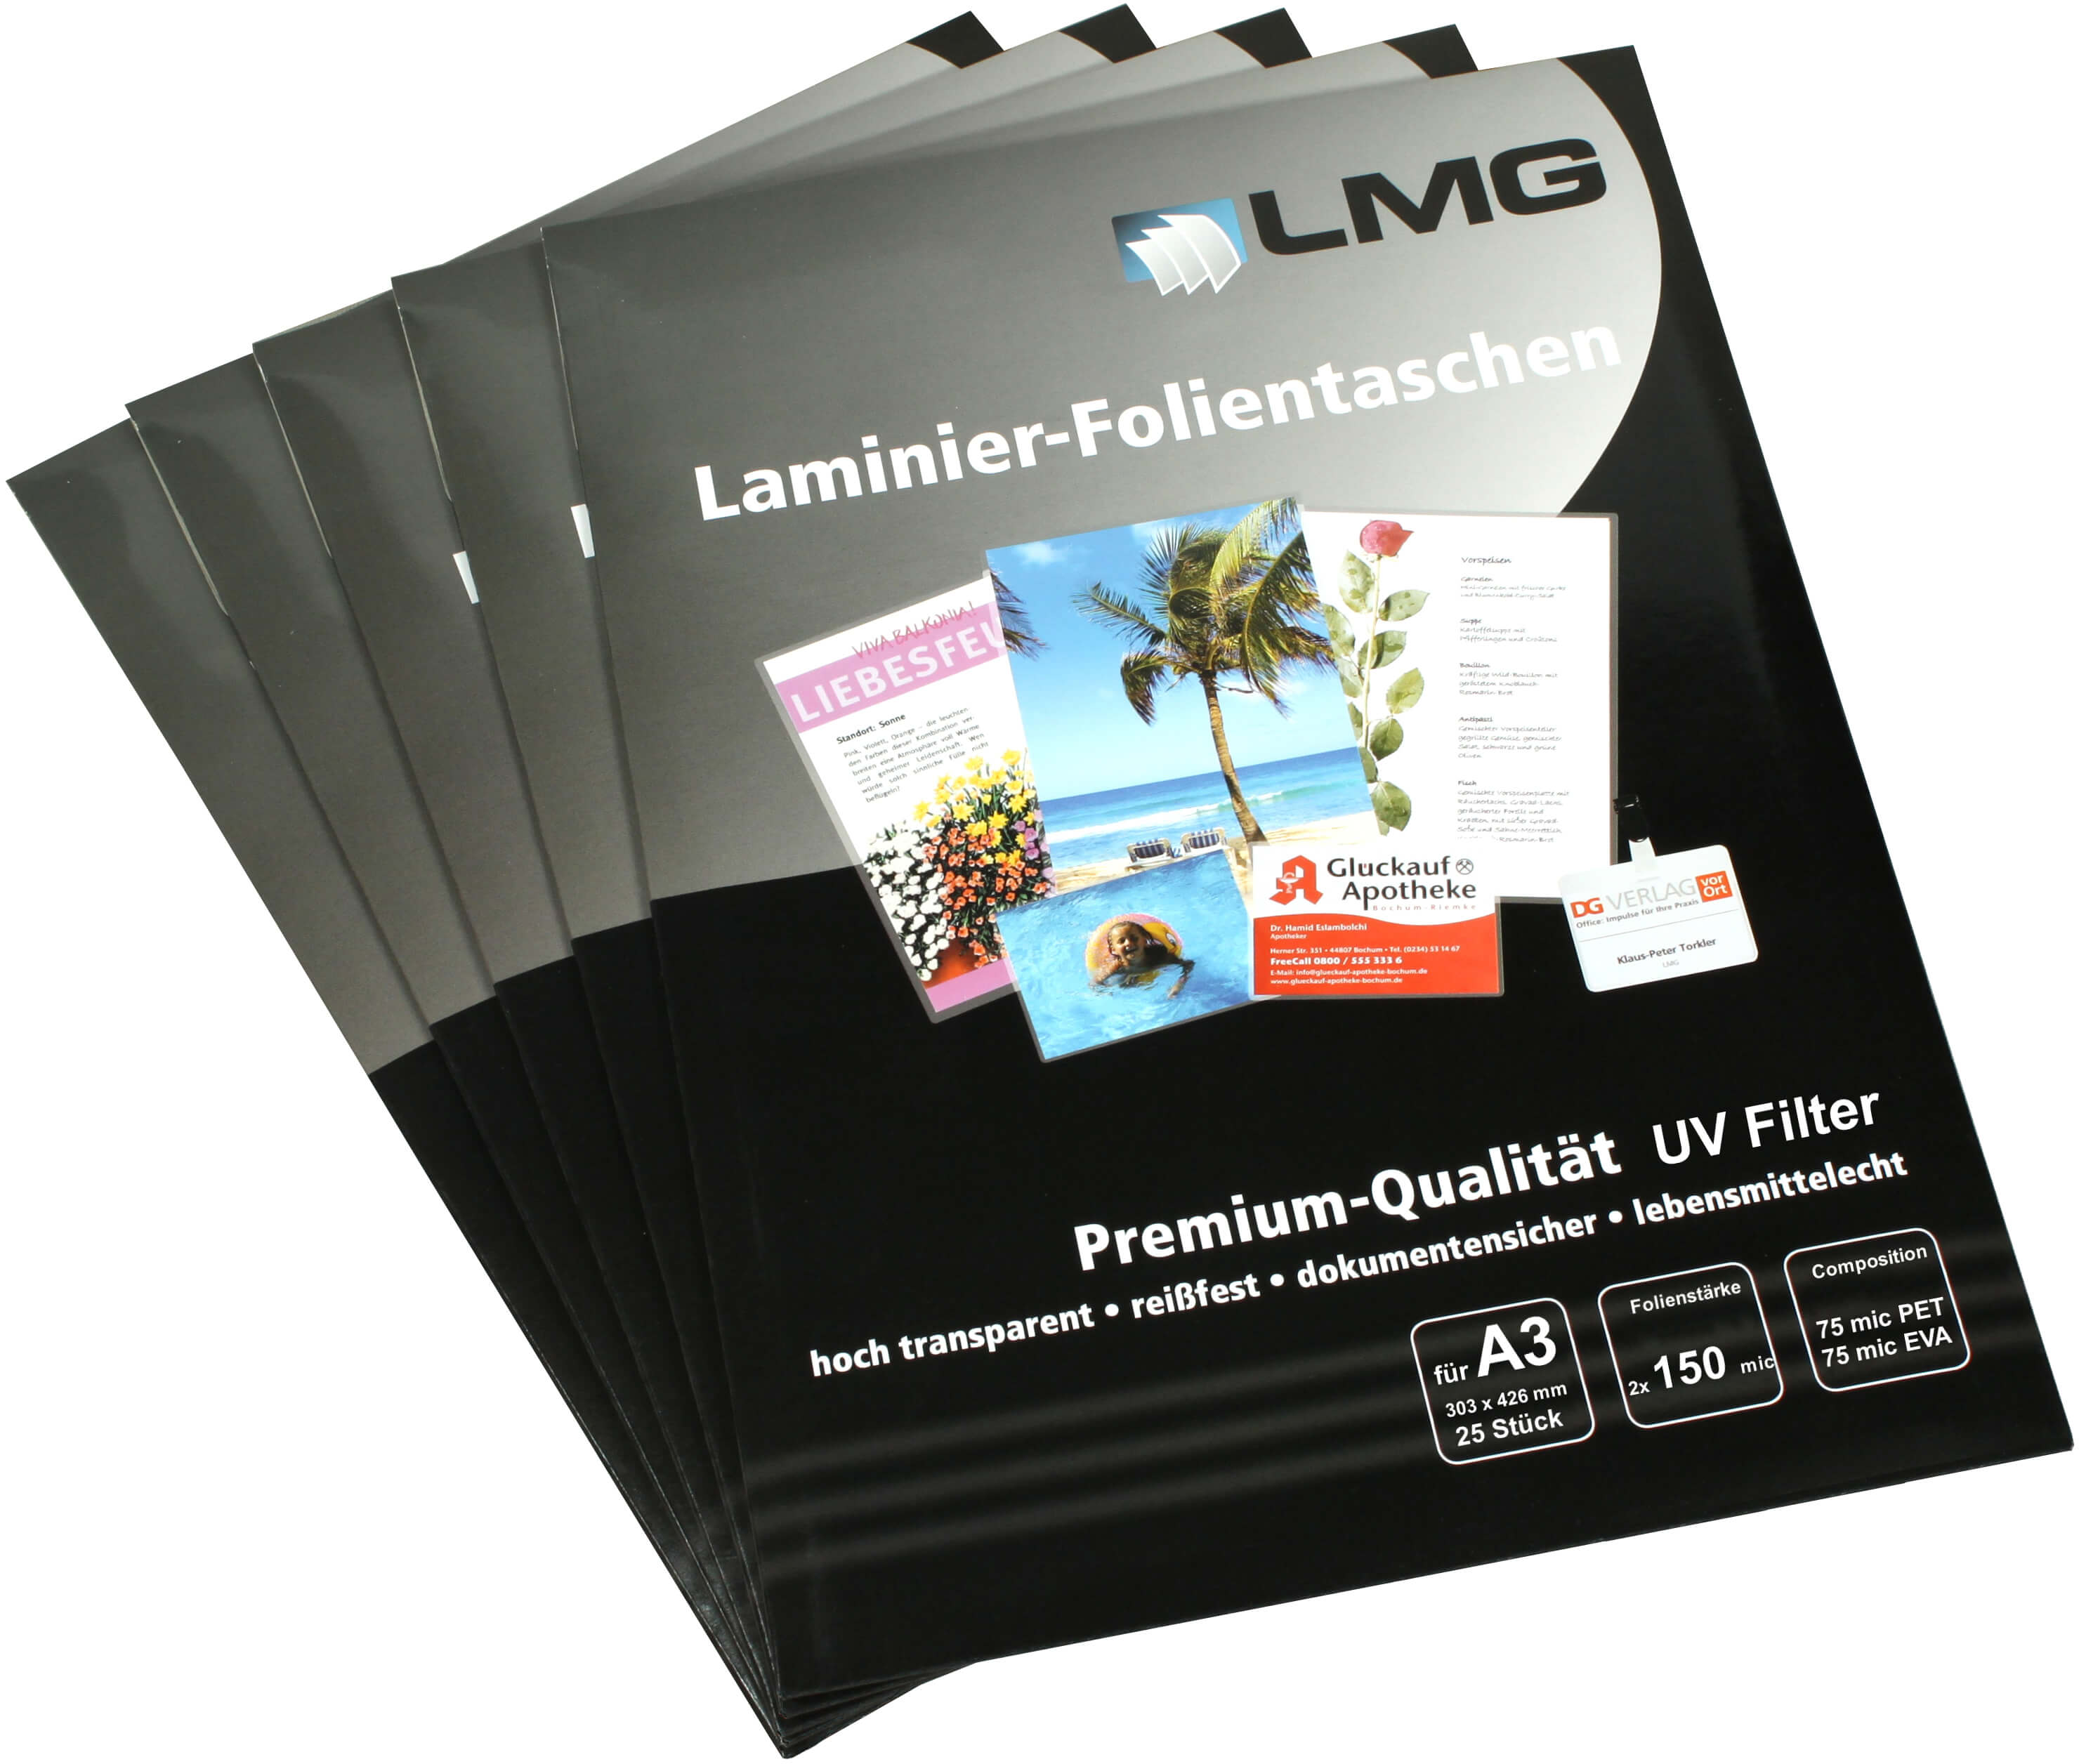 Laminierfolien A3 (303 x 426 mm), 150 mic, mit UV Filter | Bestnr. LMGA3-150UV-25